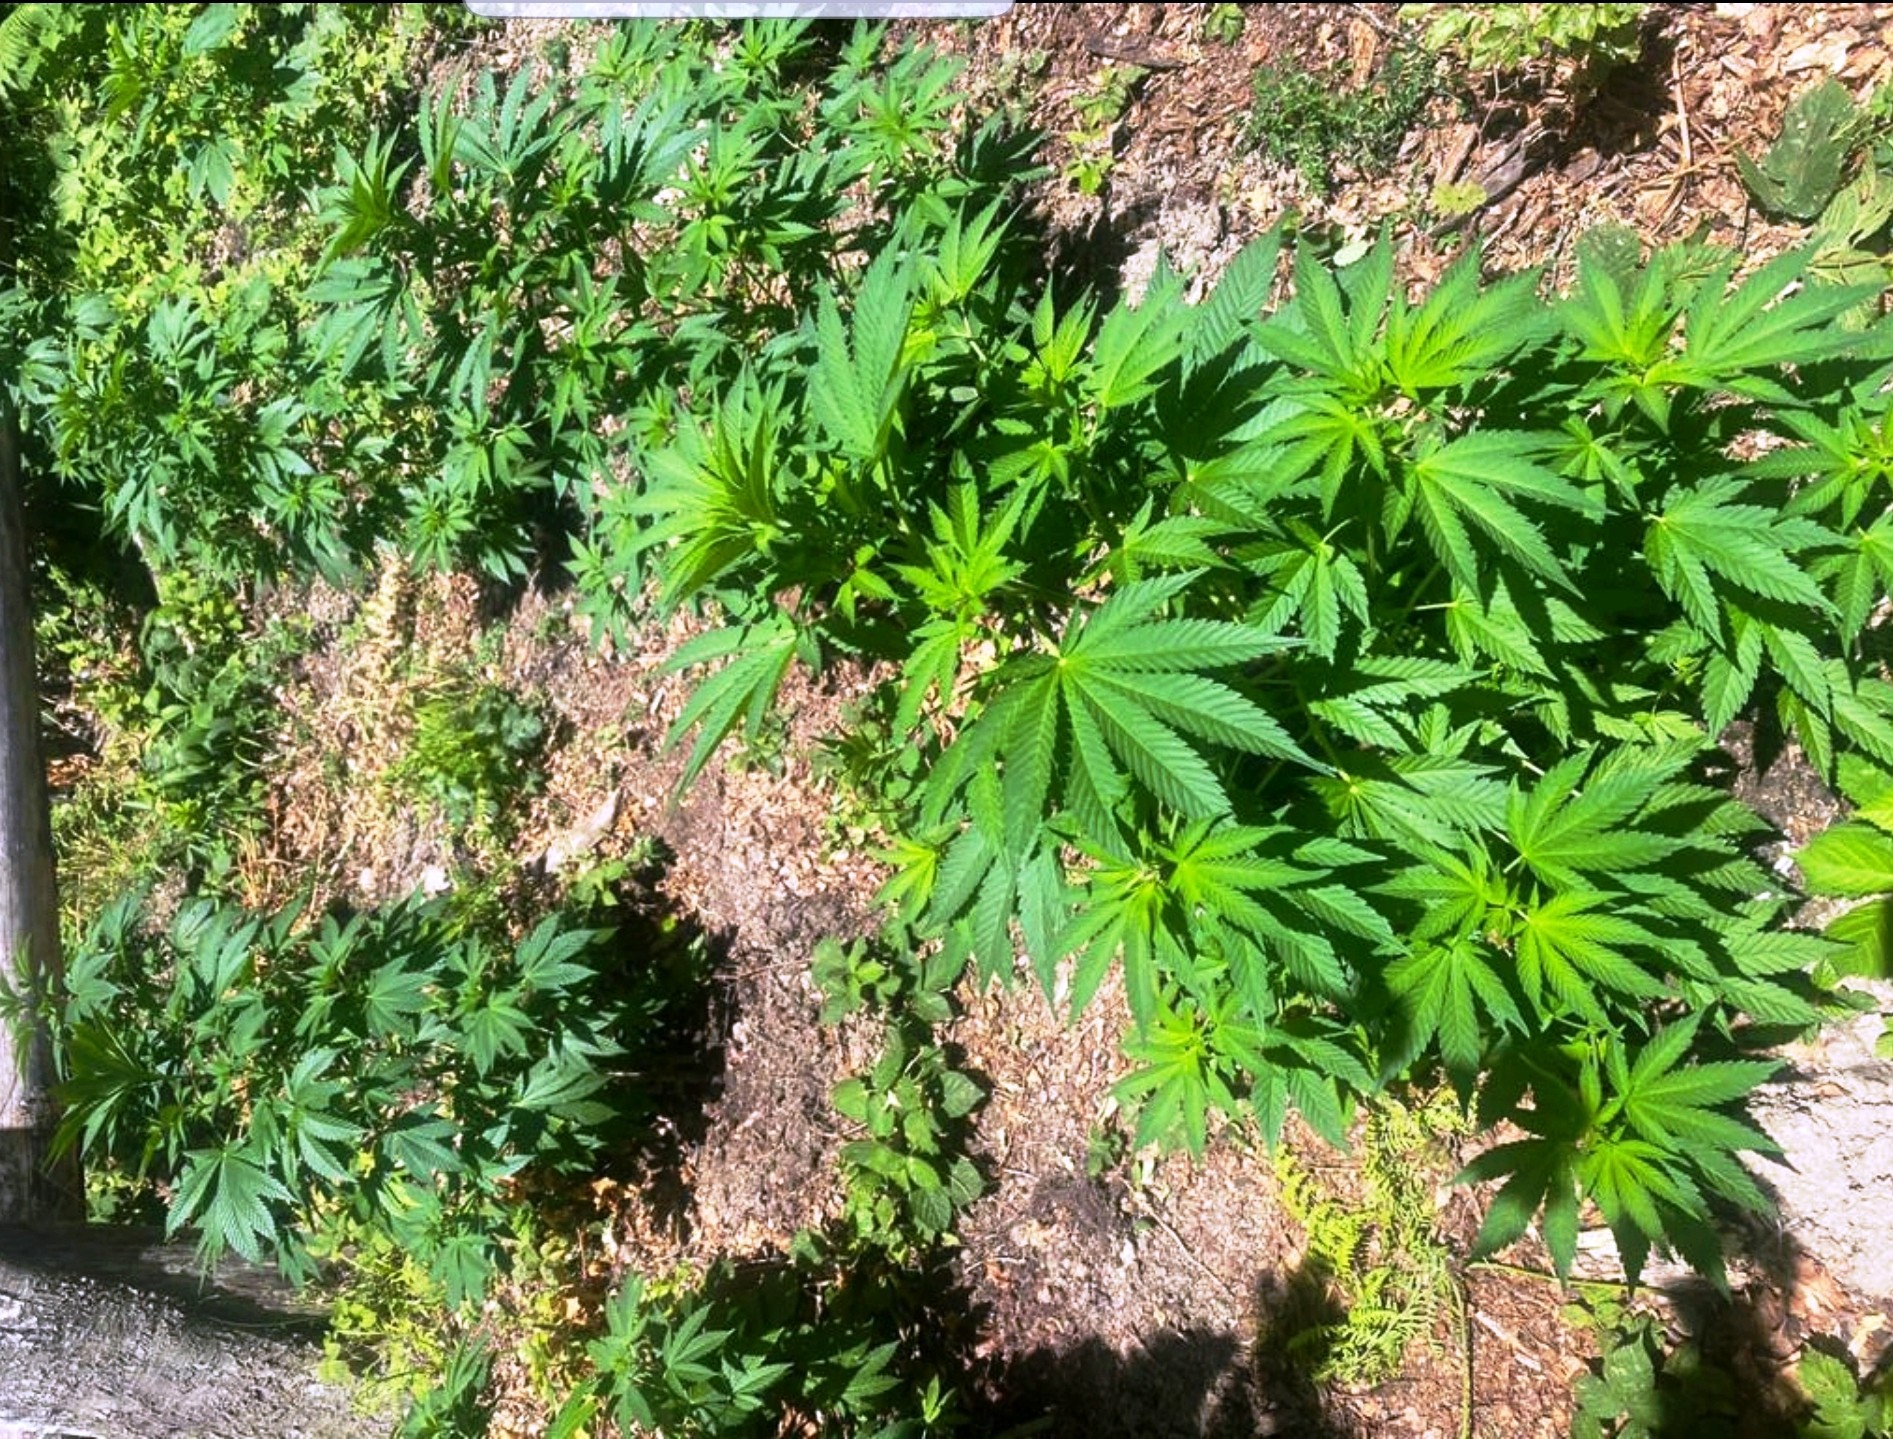 Policia arreston një person të dyshuar për kultivim të bimëve narkotike